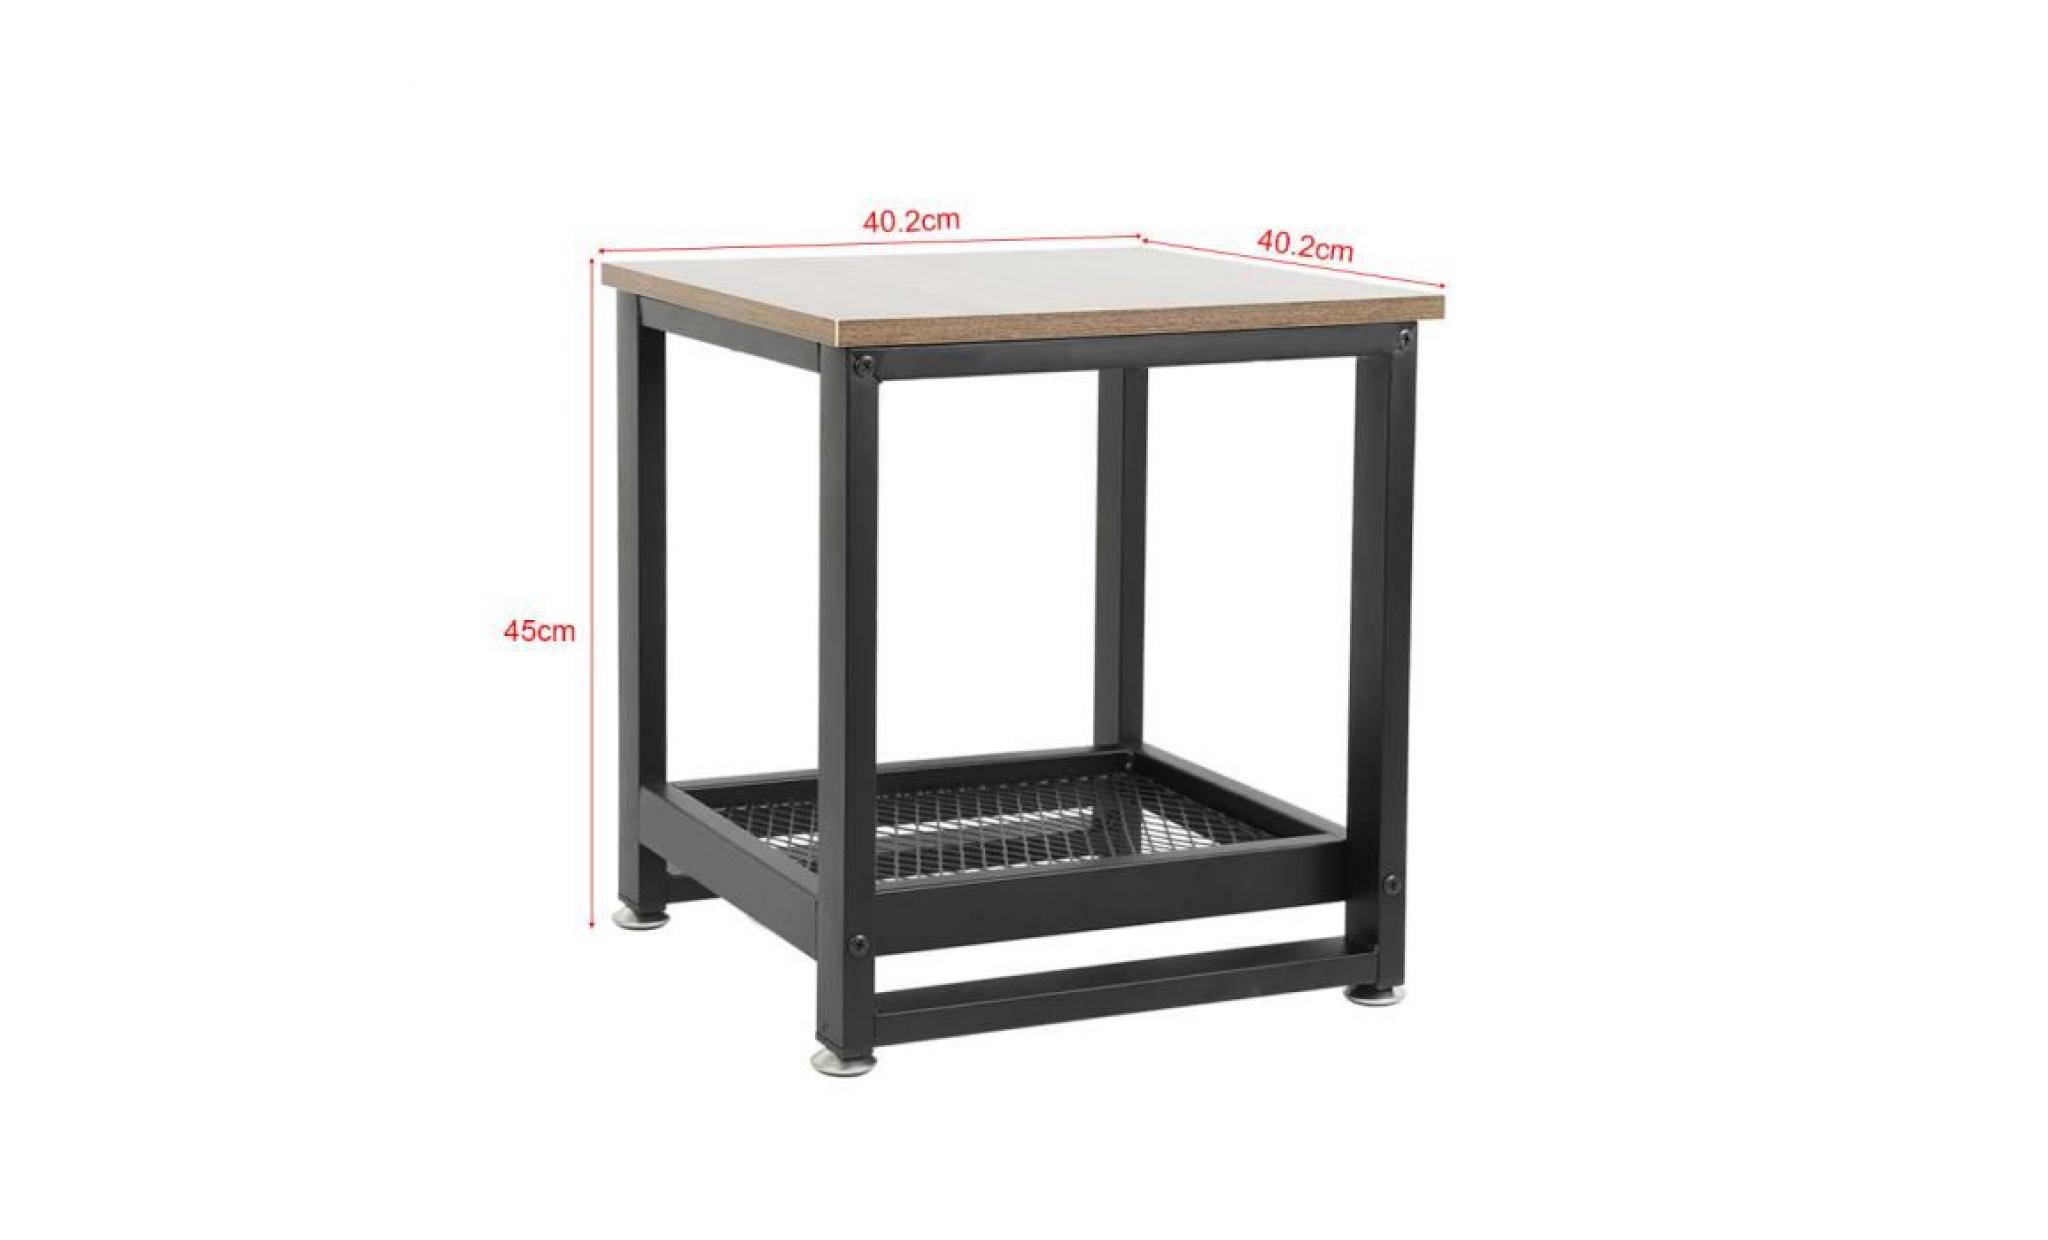 perfect lot de 2 tables de chevet 40,2 x 45 x 40,2 cm (l x l x h) style industriel avec rangement armature en métal pas cher